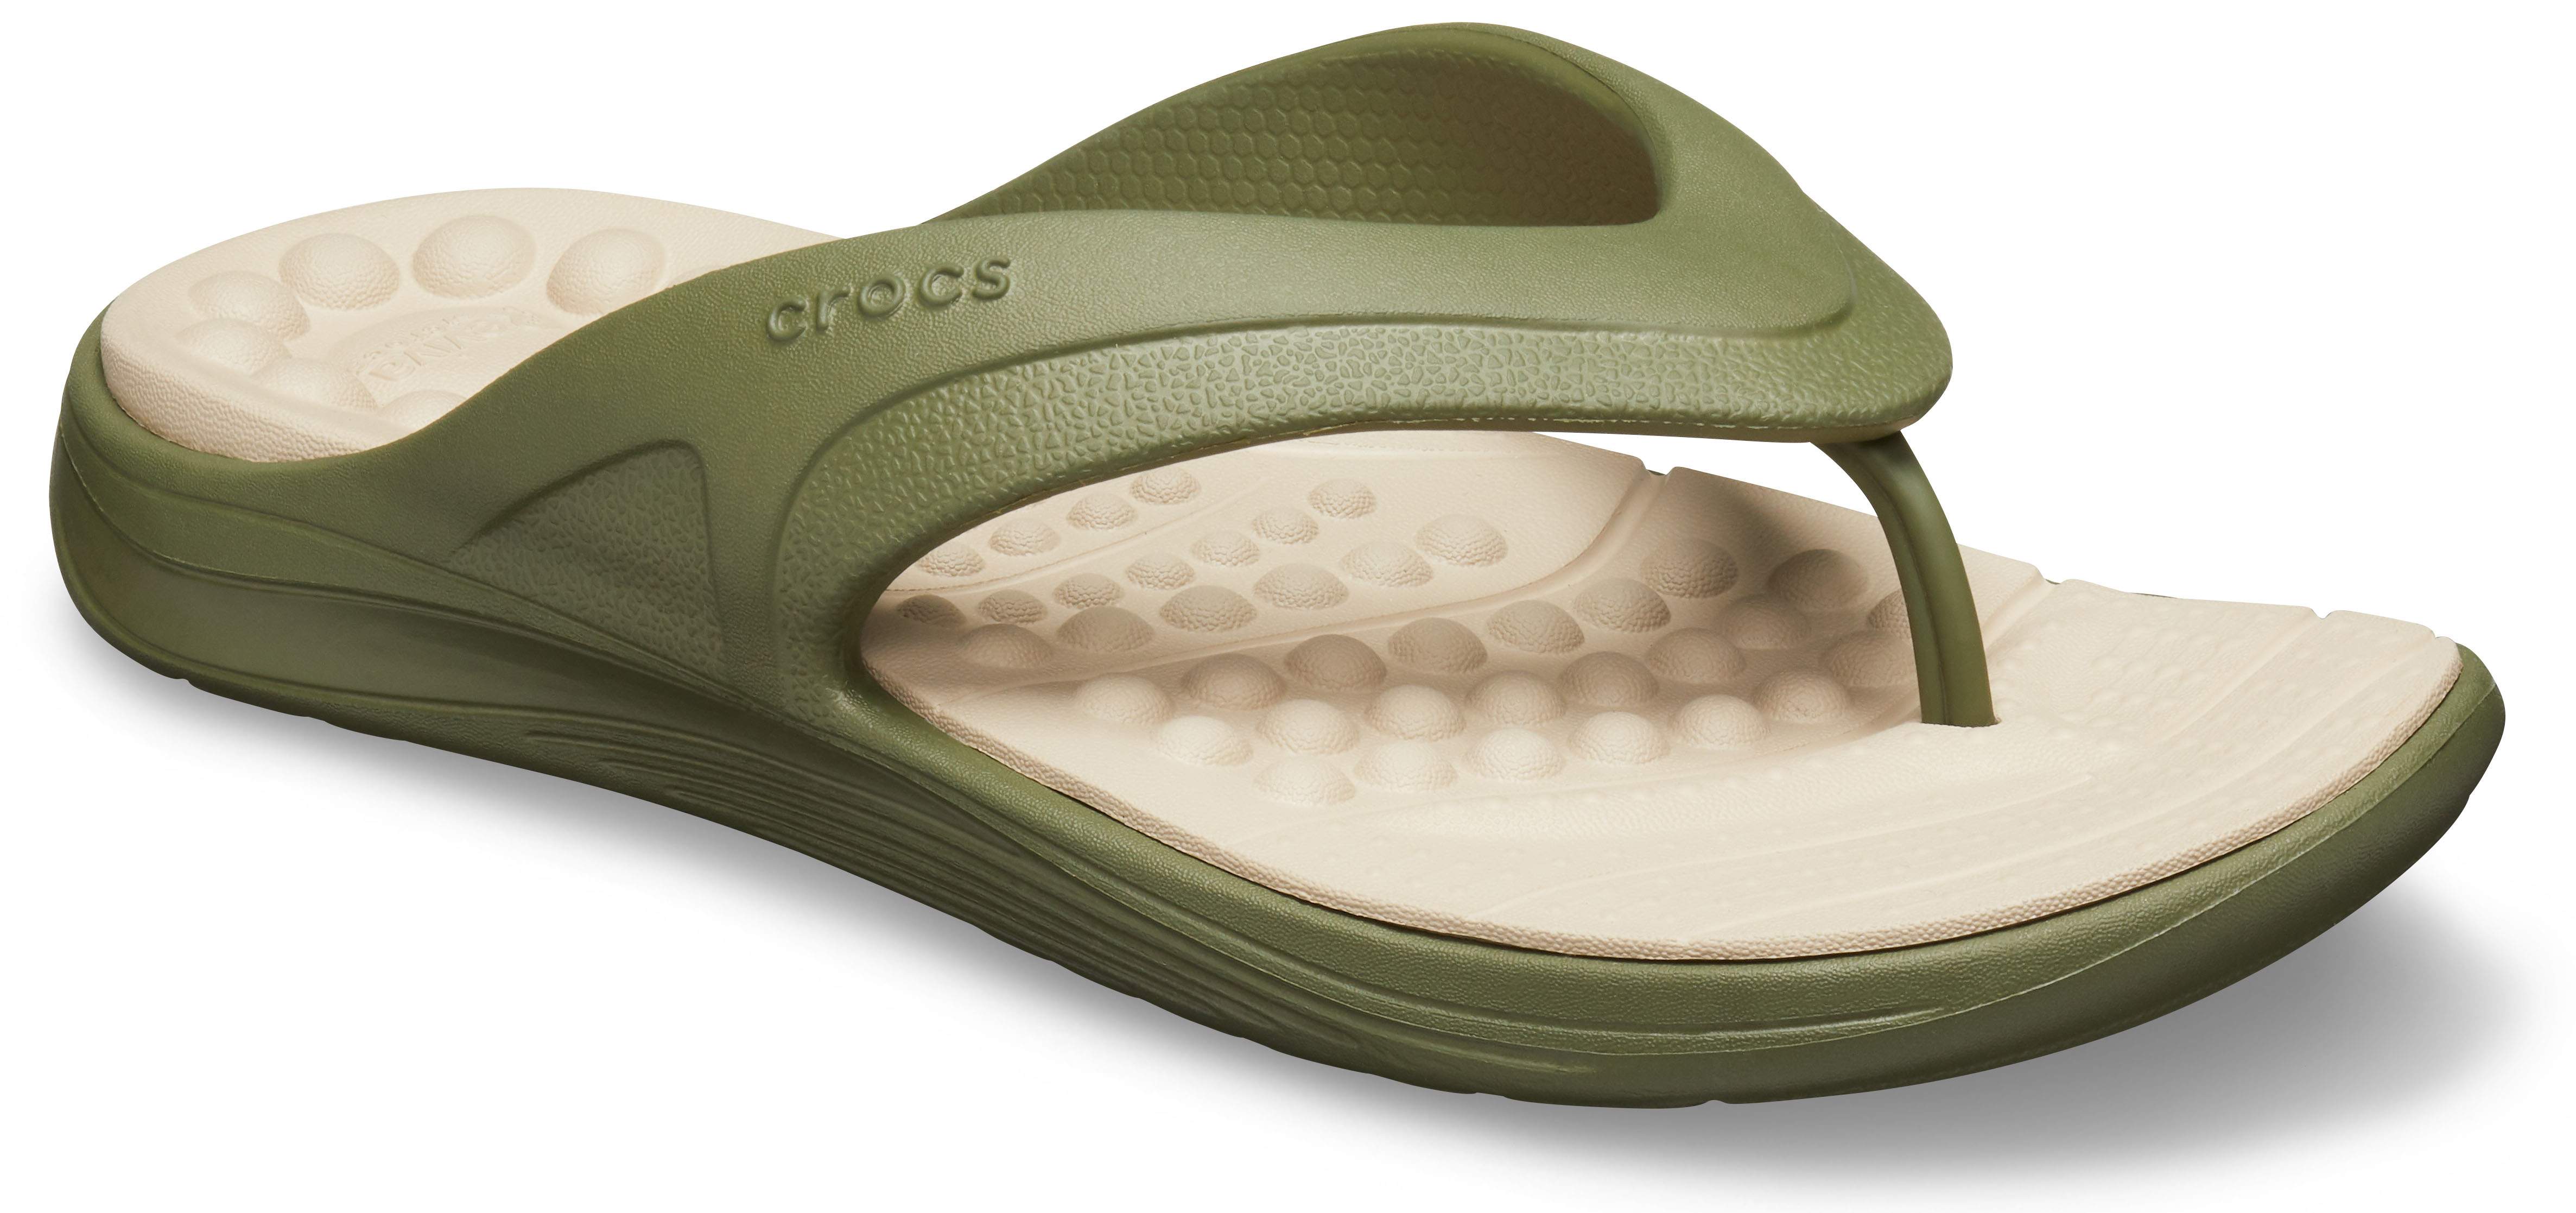 crocs women's reviva flip flop